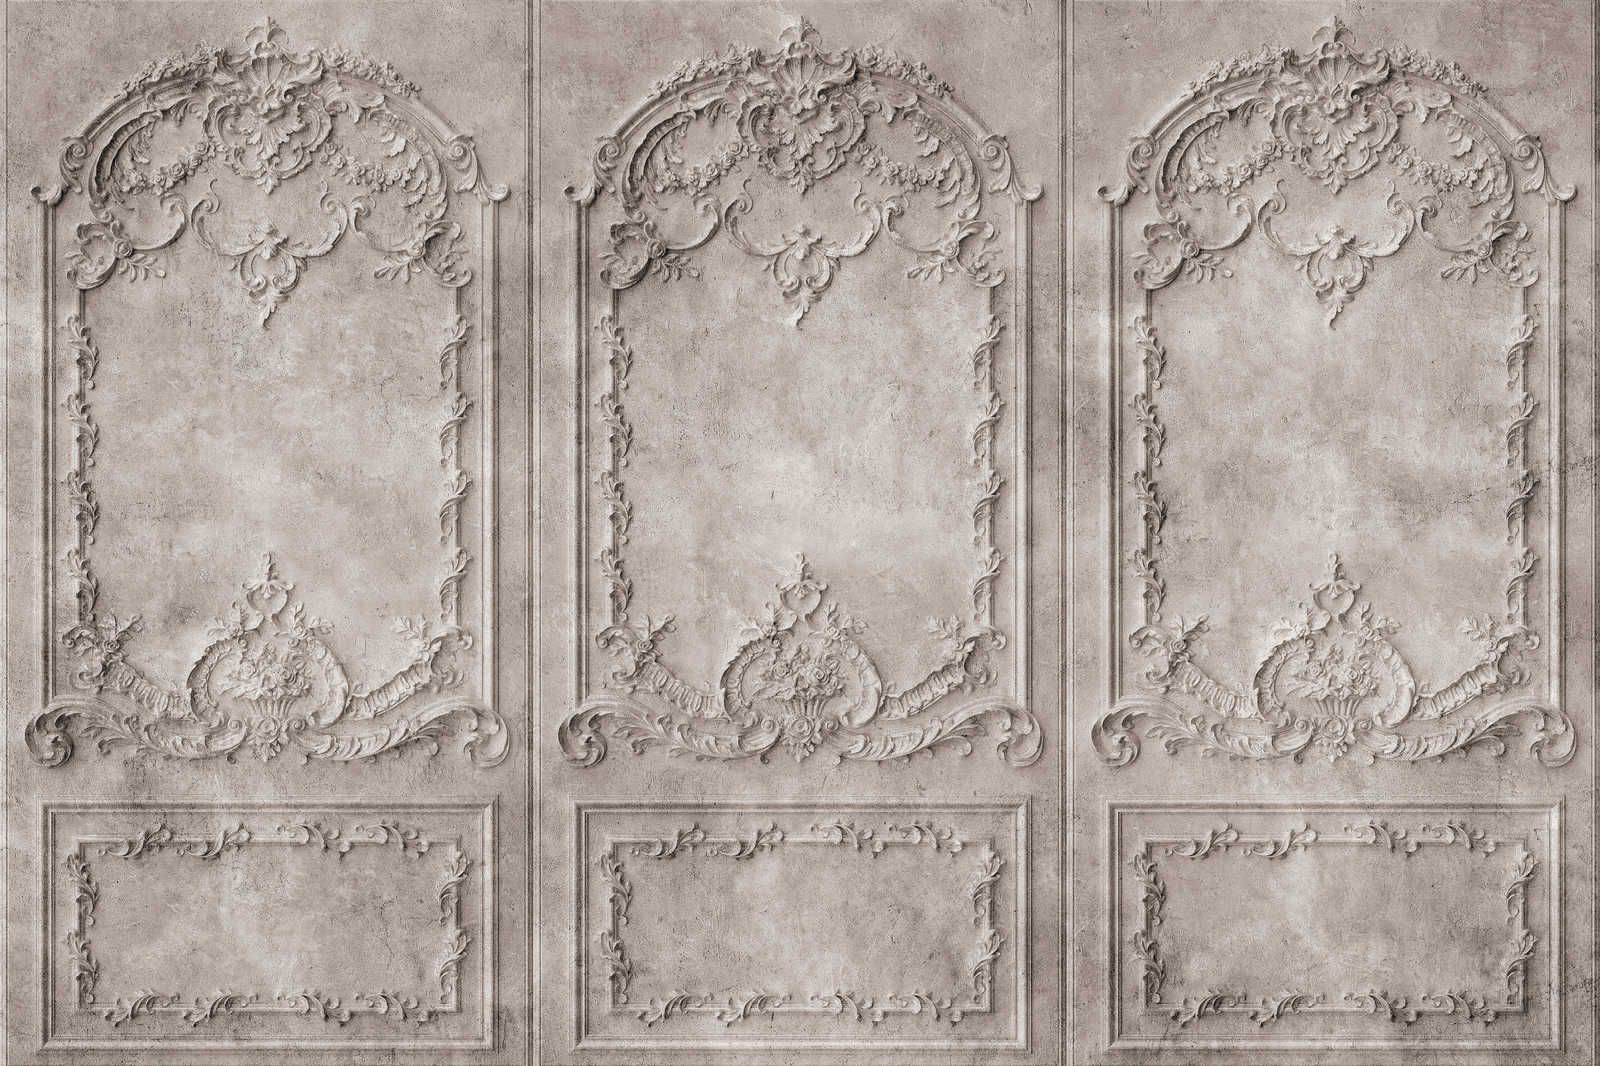             Versailles 1 - Toile Gris-Brun Panneaux en bois de style baroque - 0,90 m x 0,60 m
        